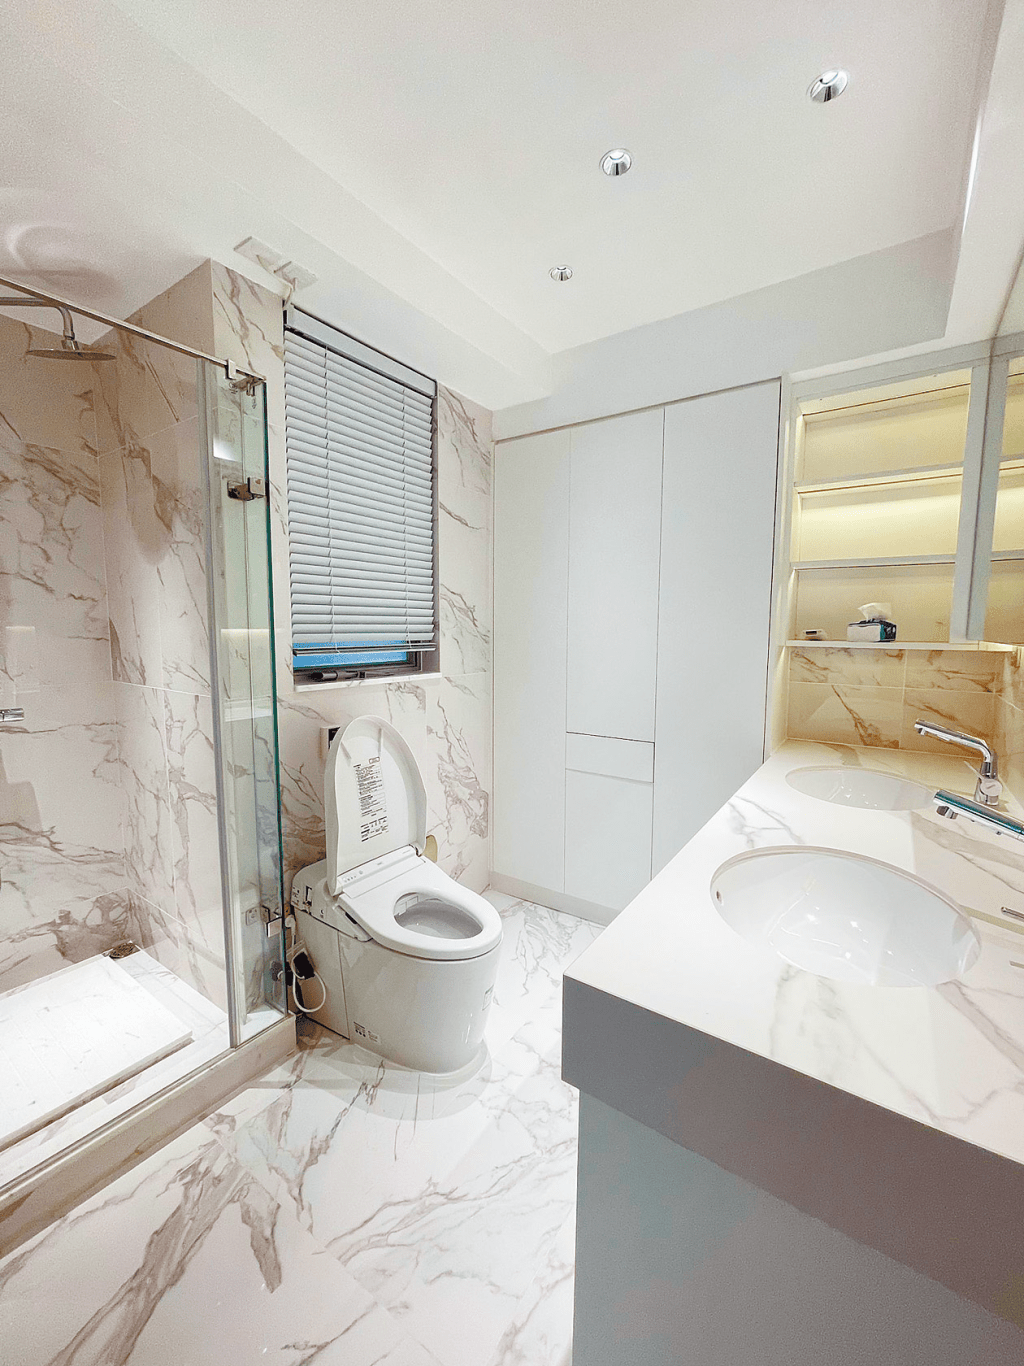 浴室裝潢亮麗潔白，一室通透明亮。